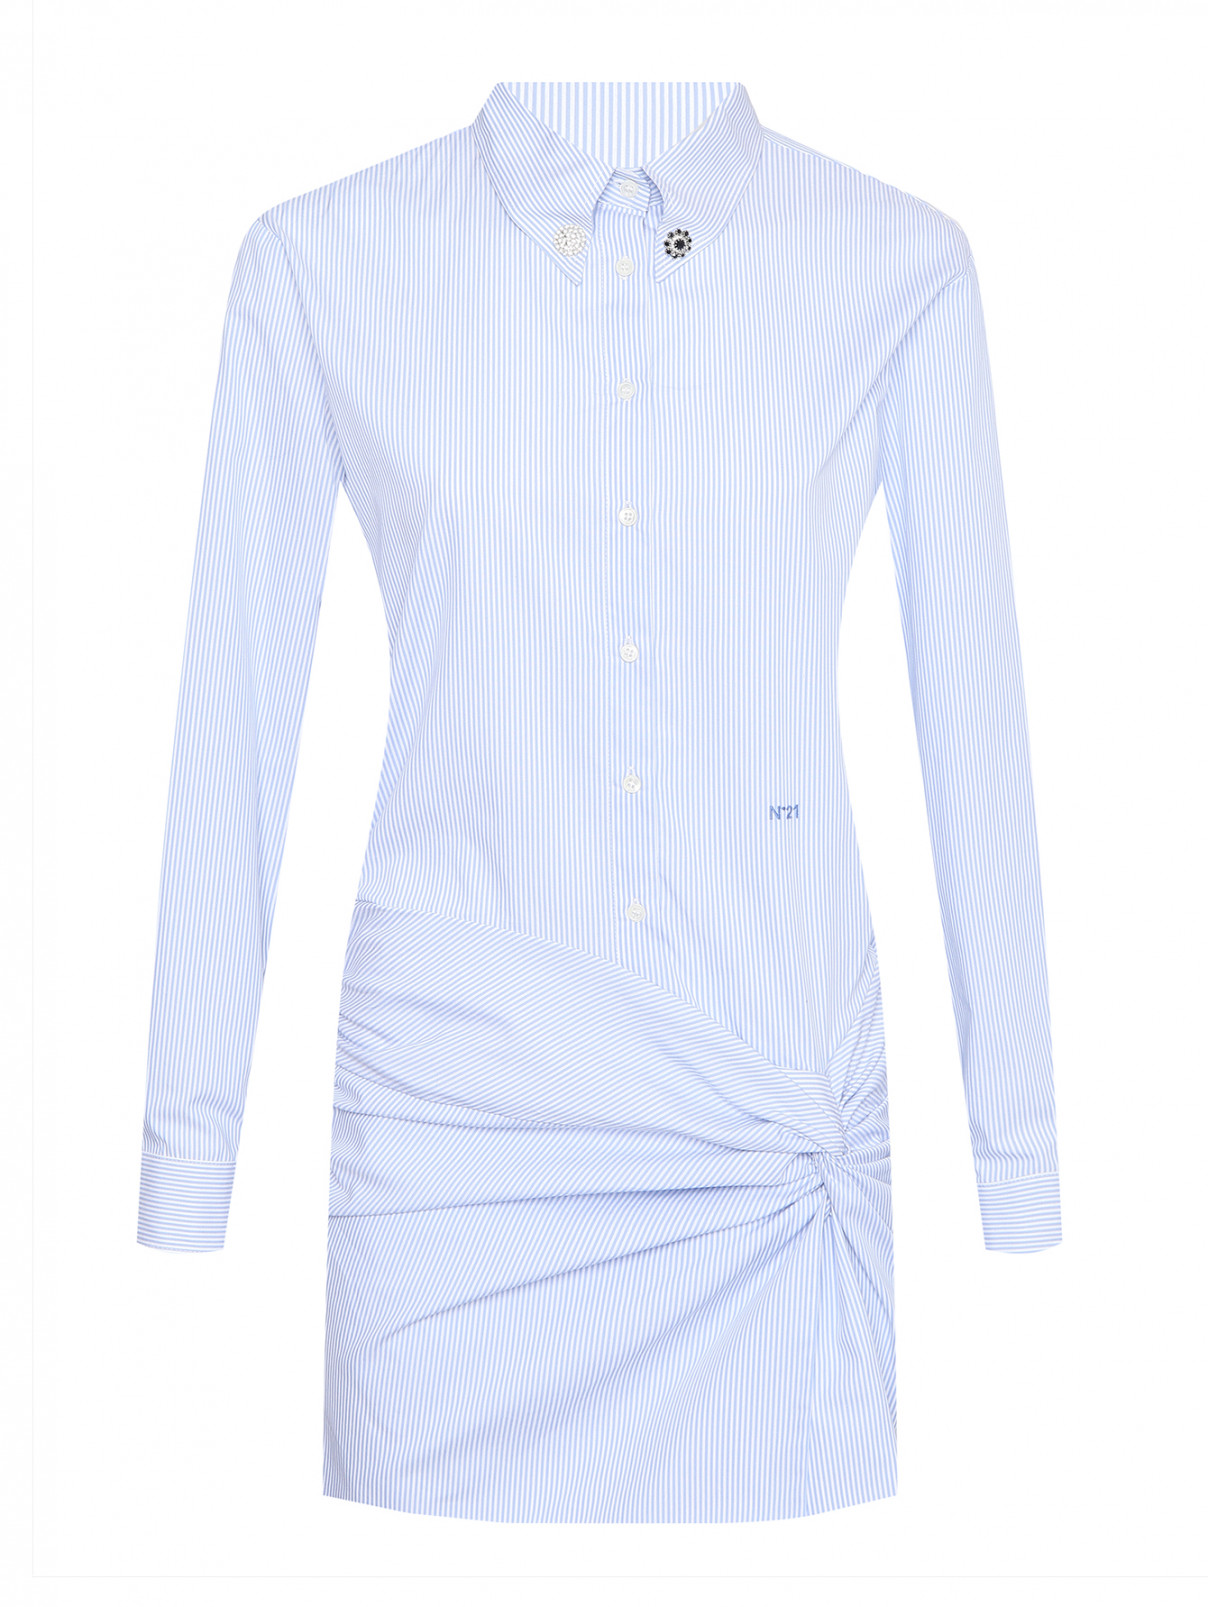 Платье-мини из хлопка с узором полоска N21  –  Общий вид  – Цвет:  Синий